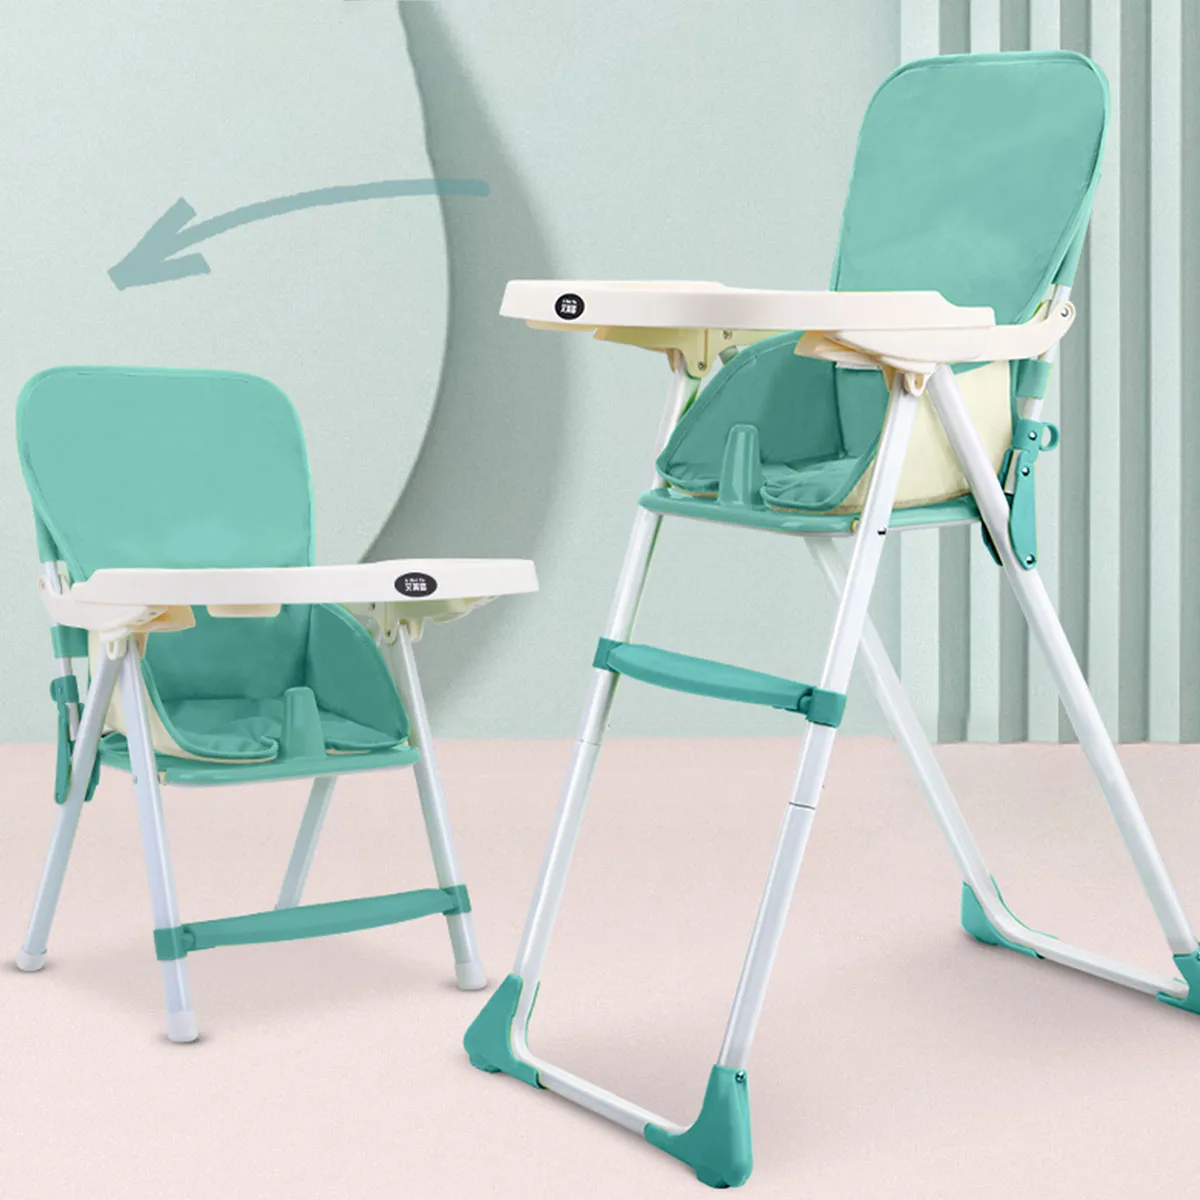 저렴한 휴대용 어린이 높은 의자 식사 식당 의자 더블 테이블 마카롱 다기능 높이 조절 접이식 의자 부드러운 쿠션 좌석, 유아용 식사 의자 높이 조절 가능